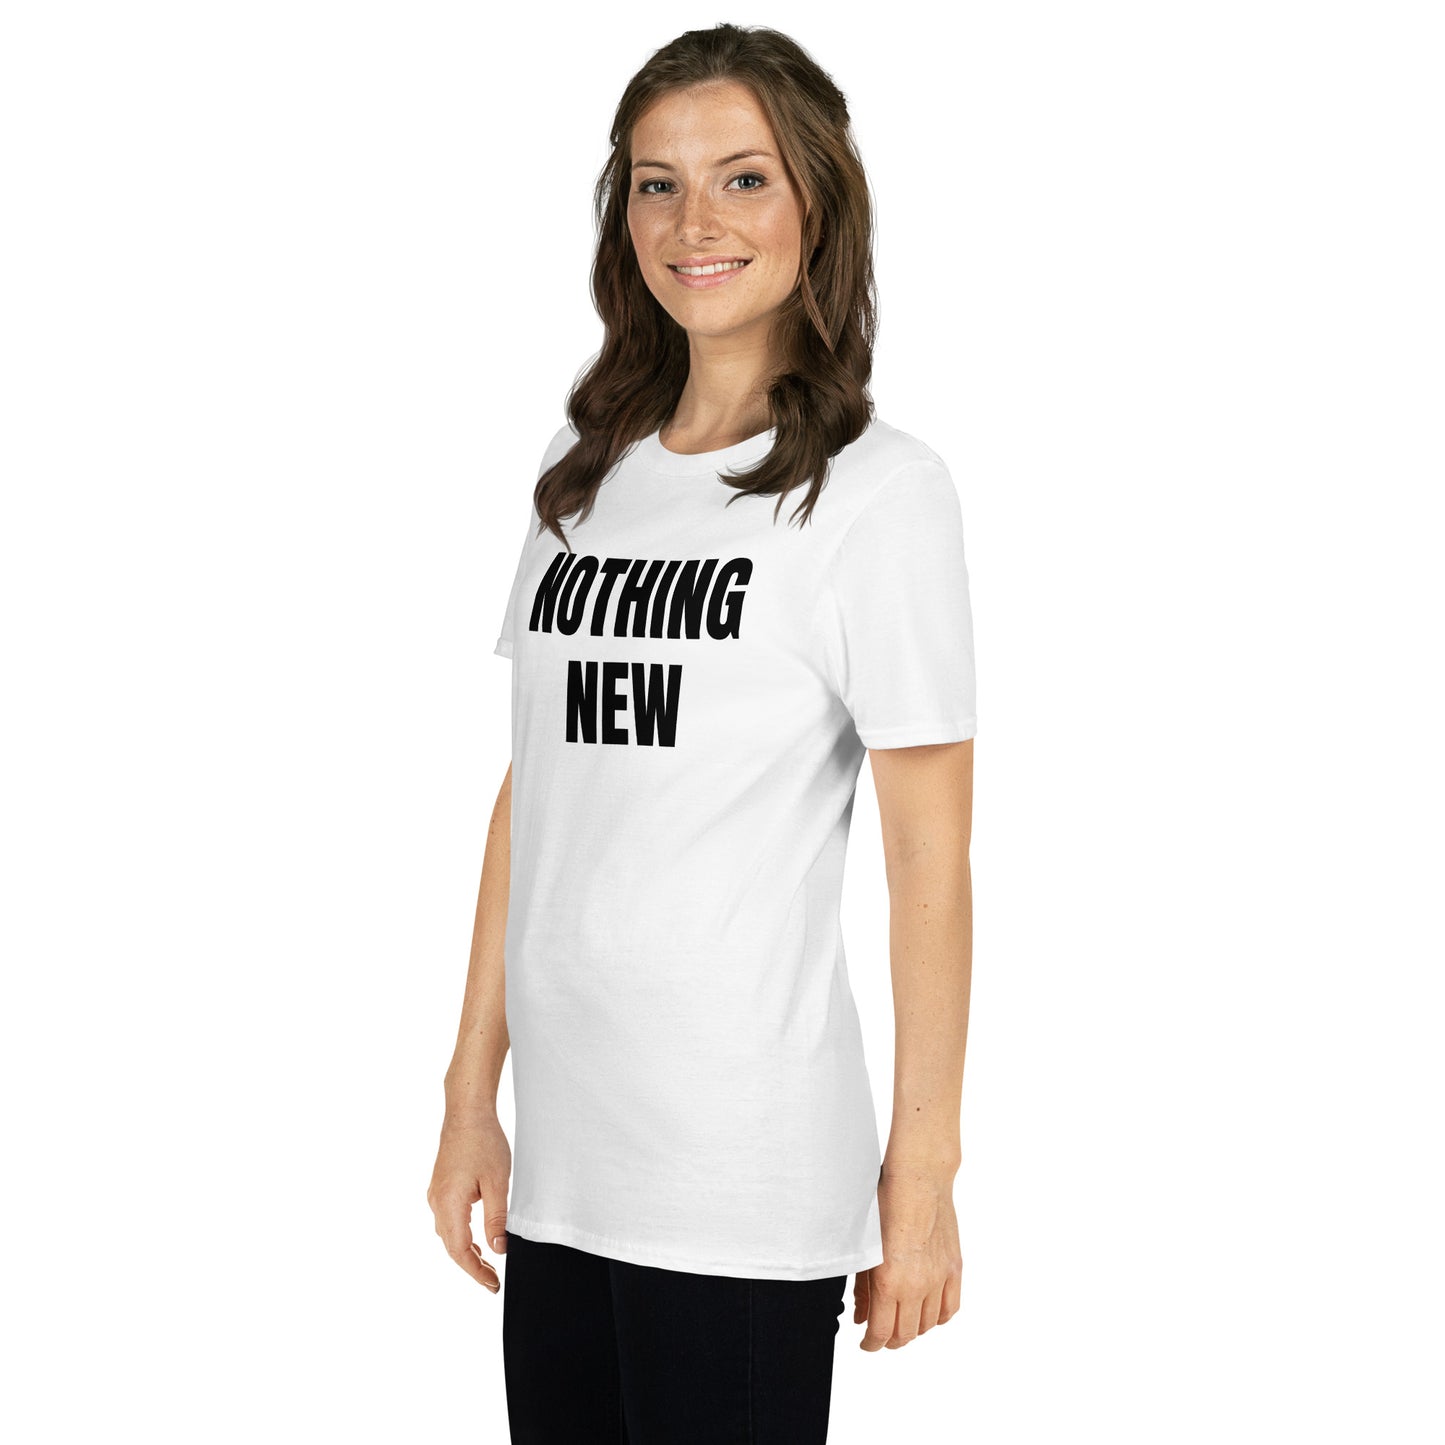 Short-Sleeve Unisex T-Shirt "NOTHING NEW" white